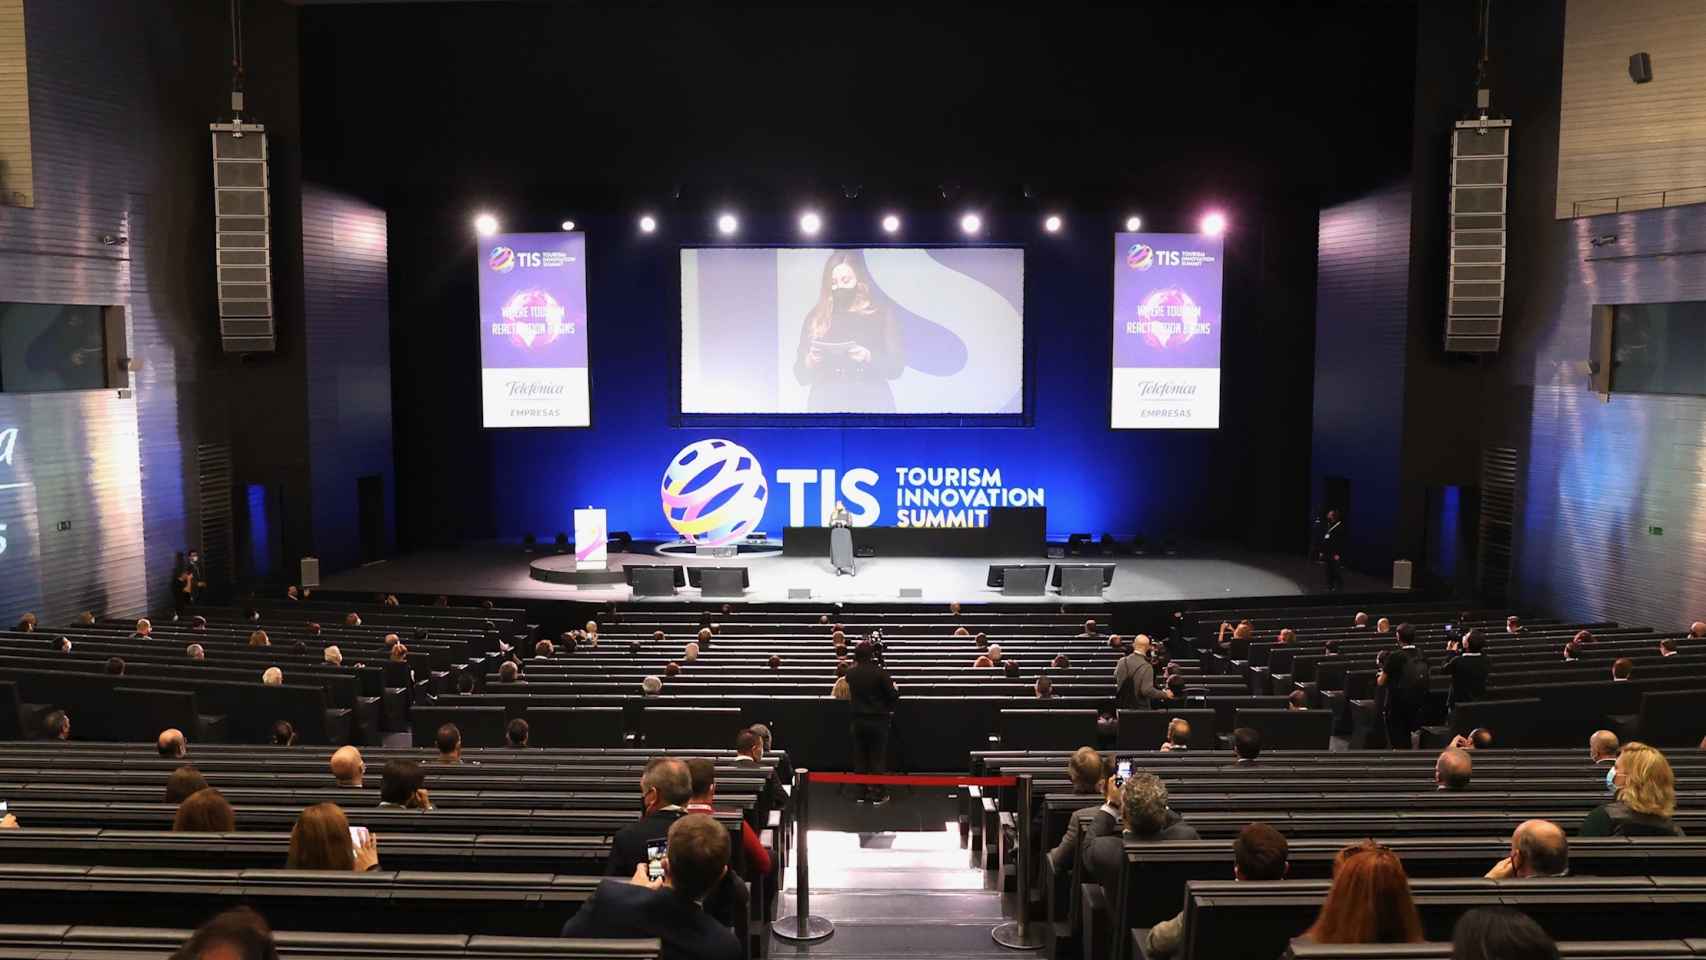 Acto de inauguración del congreso Tourism Innovation Summit (TIS 2020) en Sevilla.